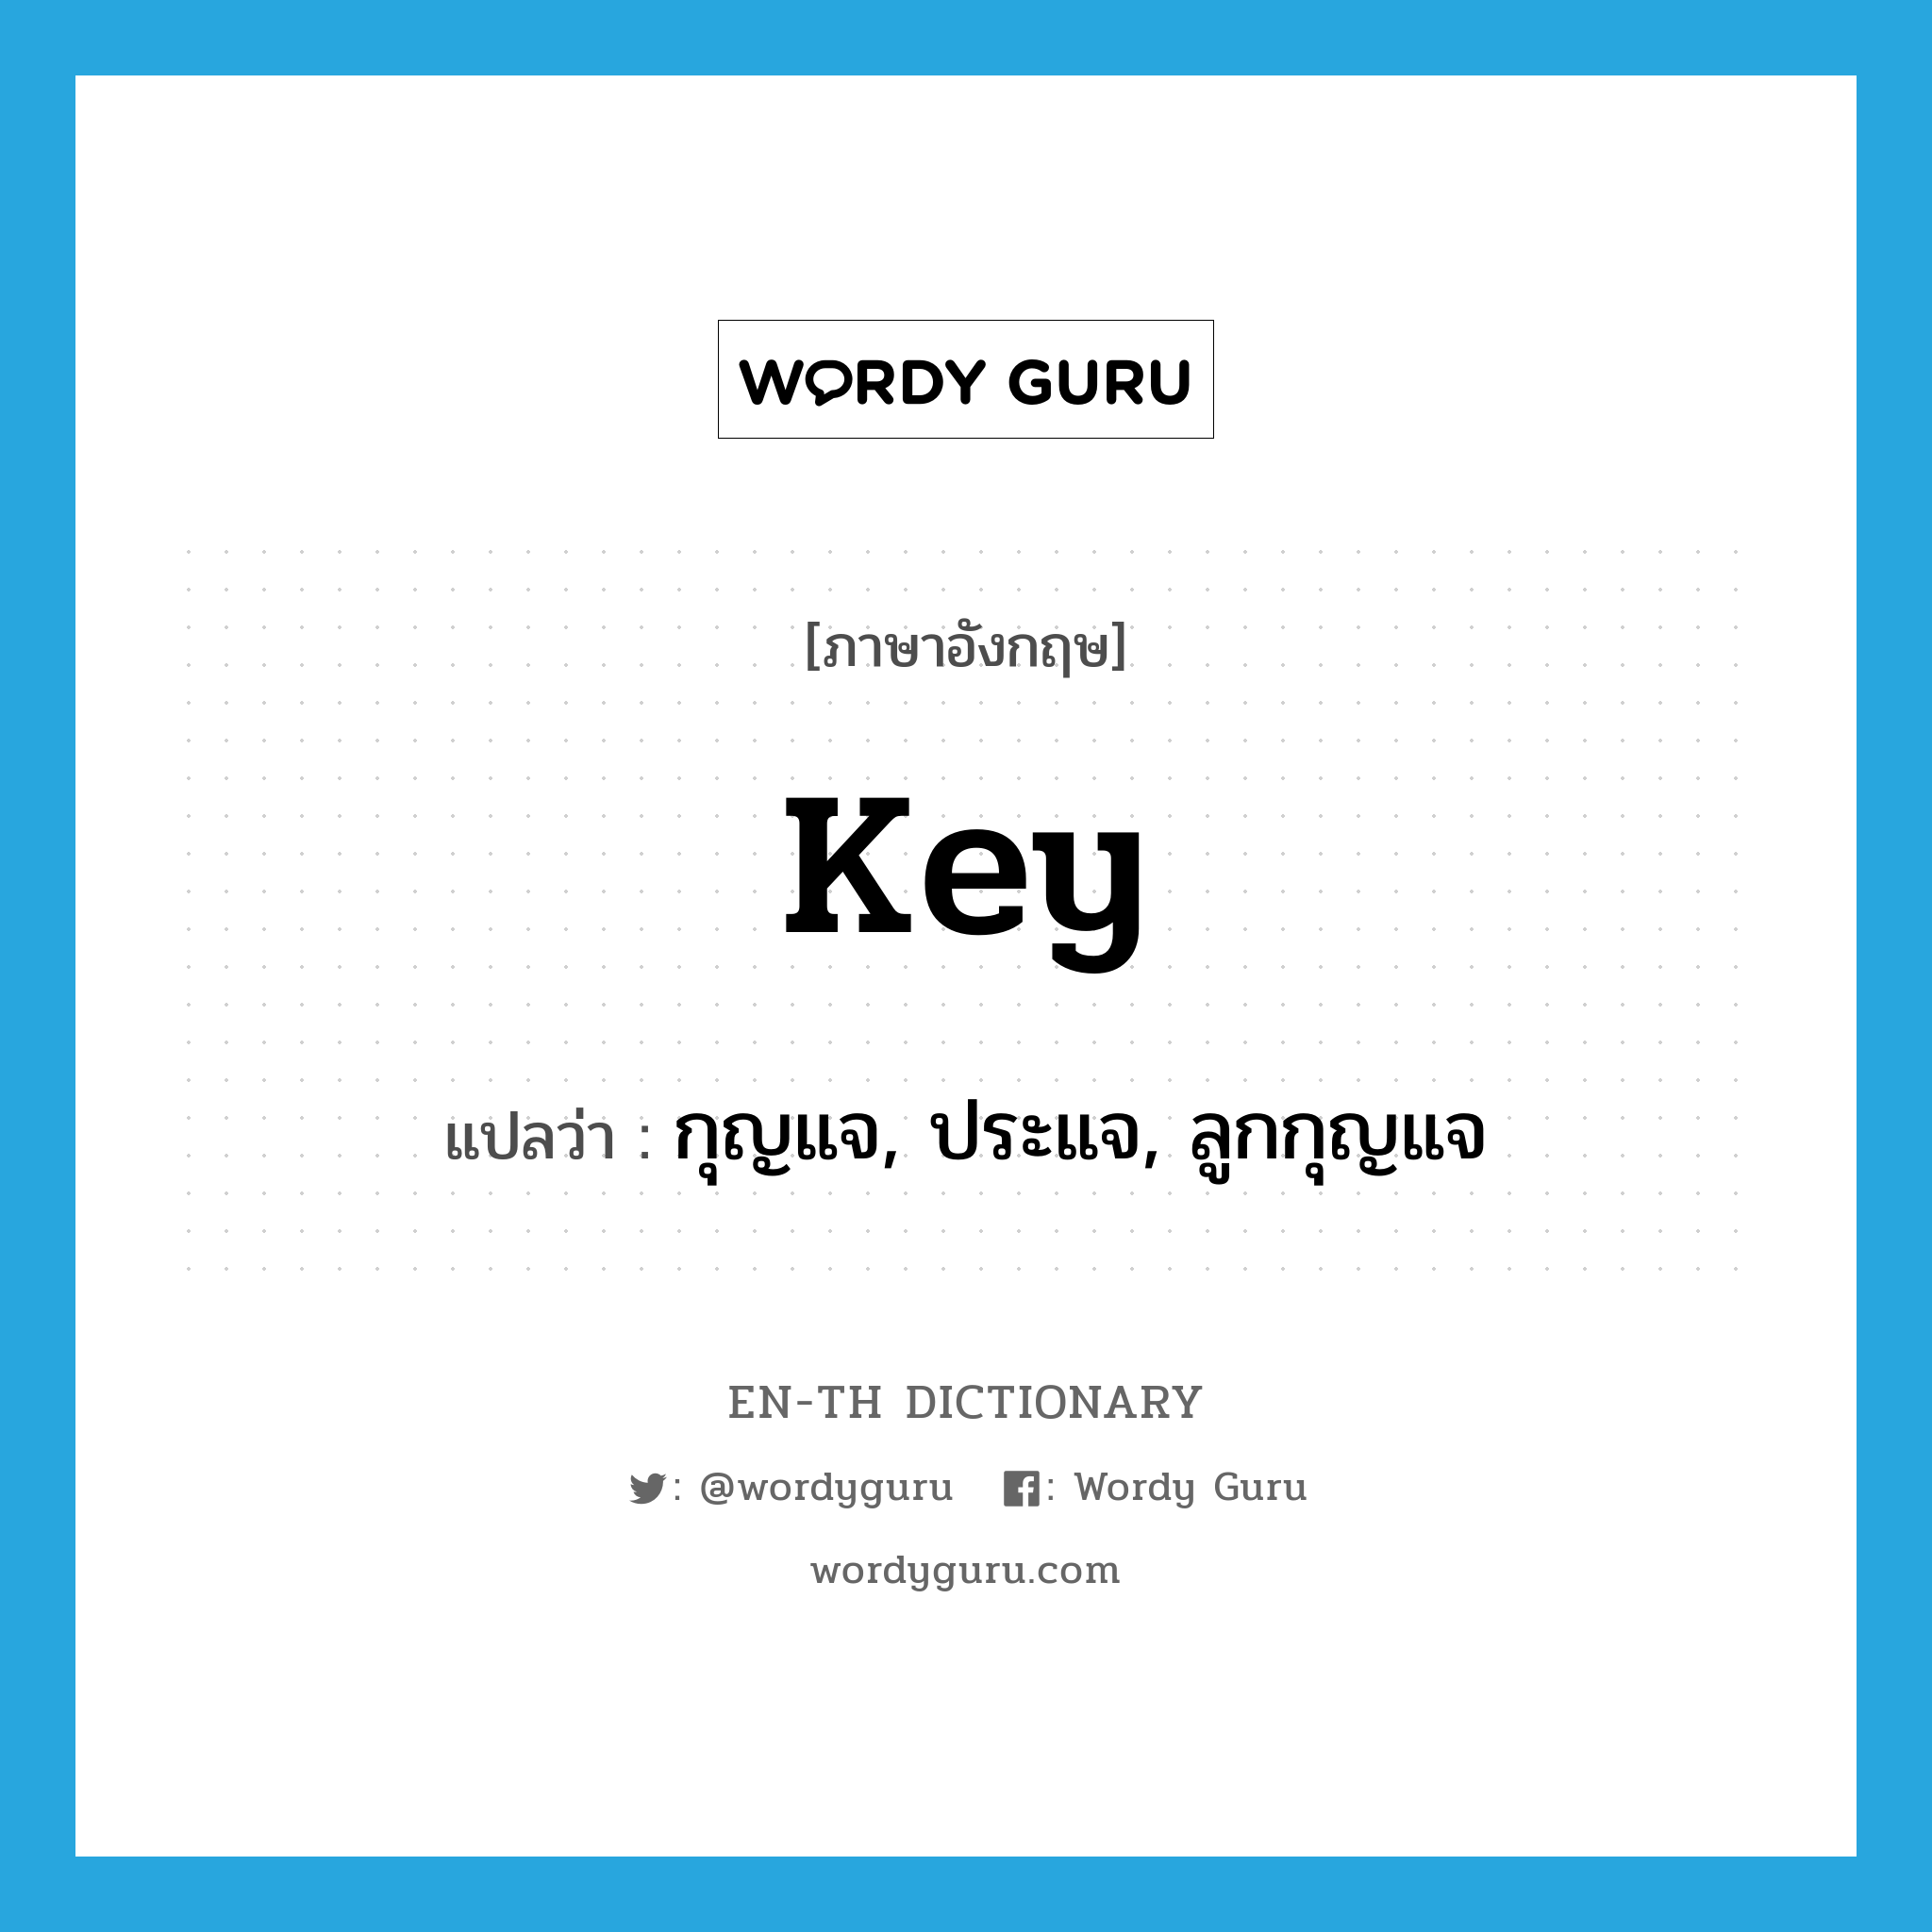 กุญแจ, ประแจ, ลูกกุญแจ ภาษาอังกฤษ?, คำศัพท์ภาษาอังกฤษ กุญแจ, ประแจ, ลูกกุญแจ แปลว่า key ประเภท N หมวด N